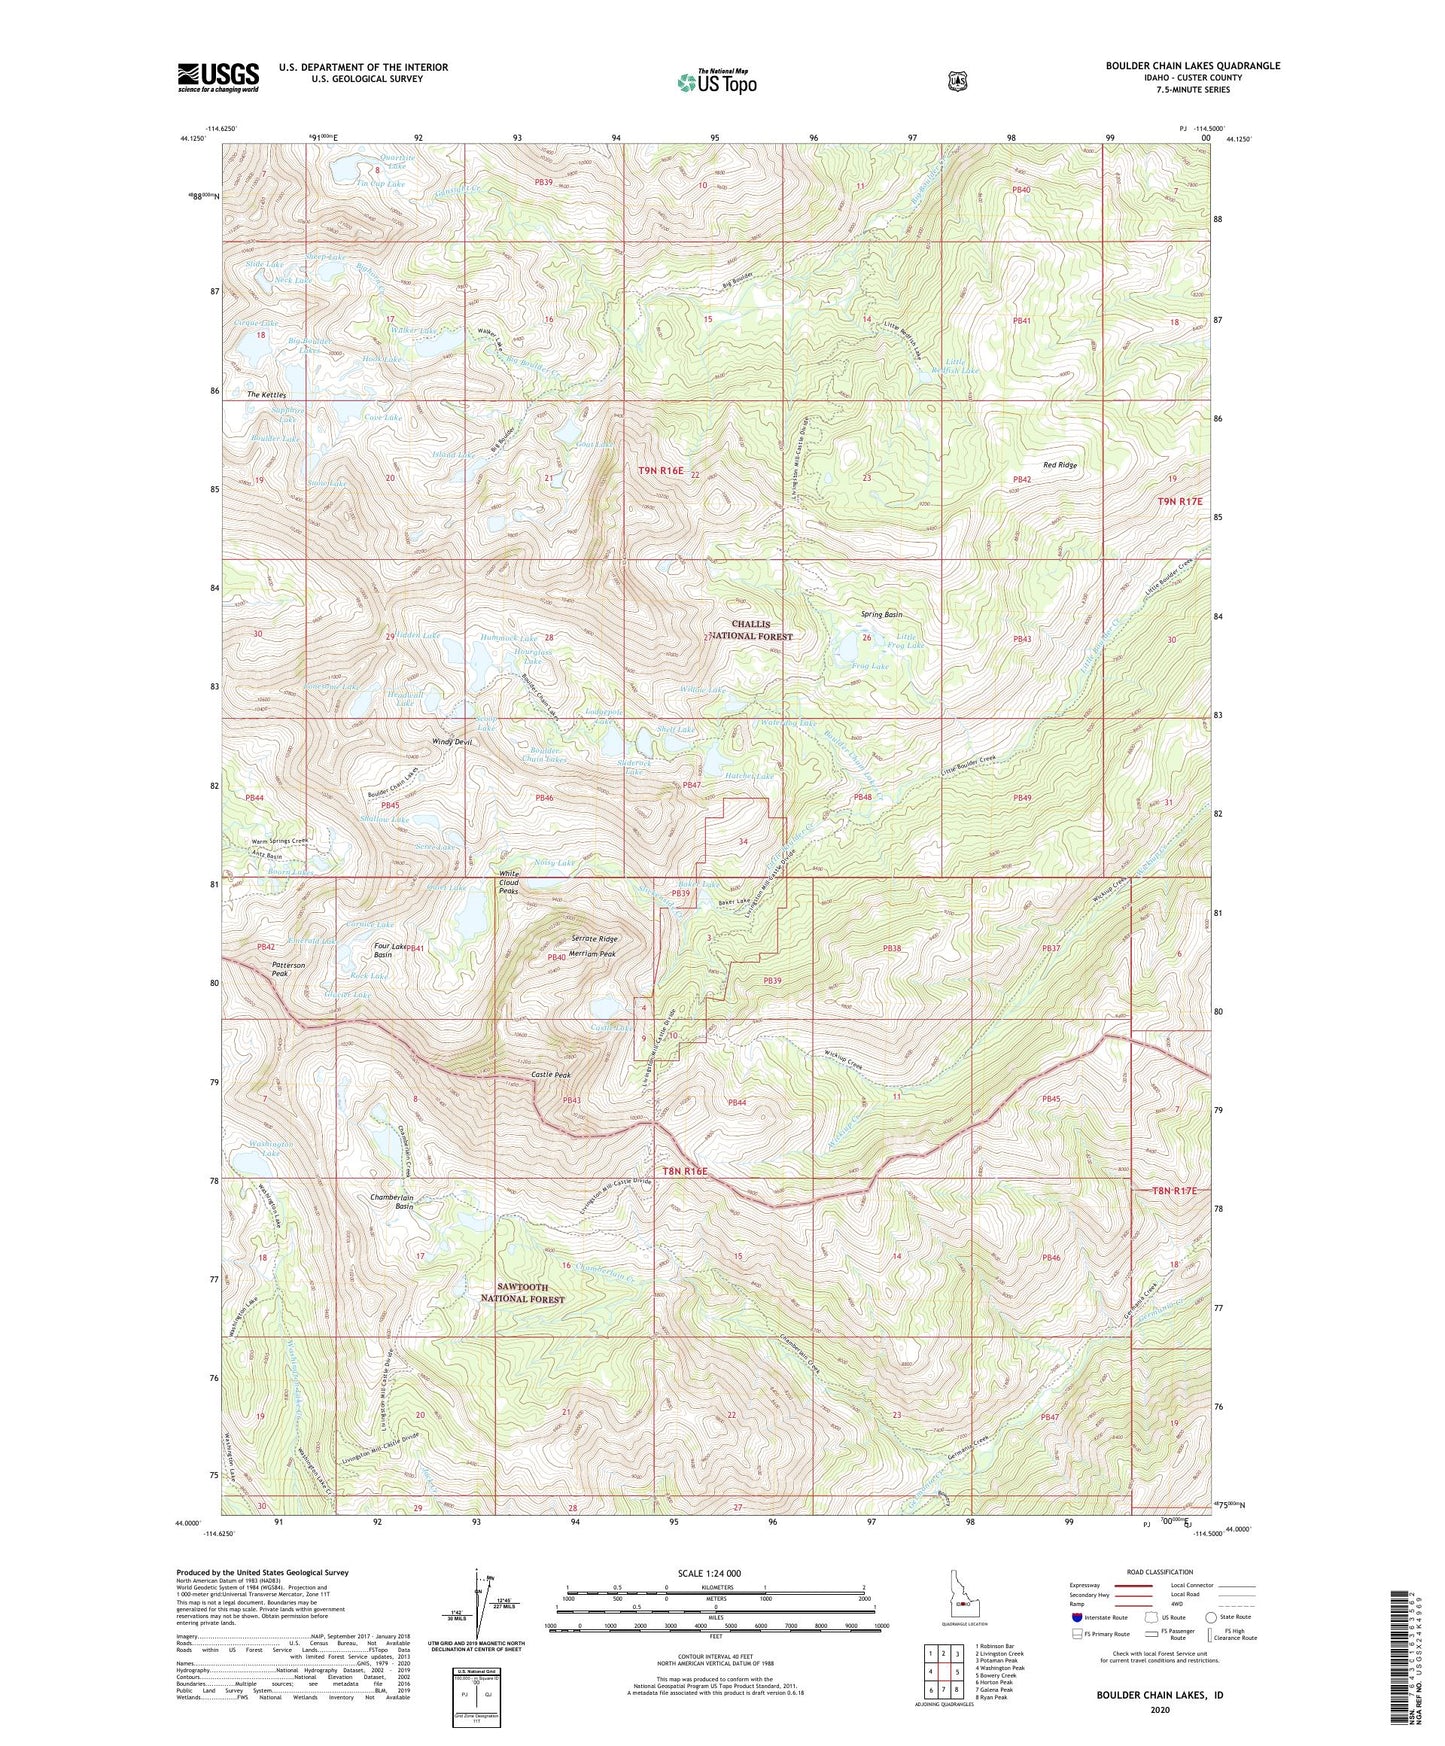 Boulder Chain Lakes Idaho US Topo Map Image